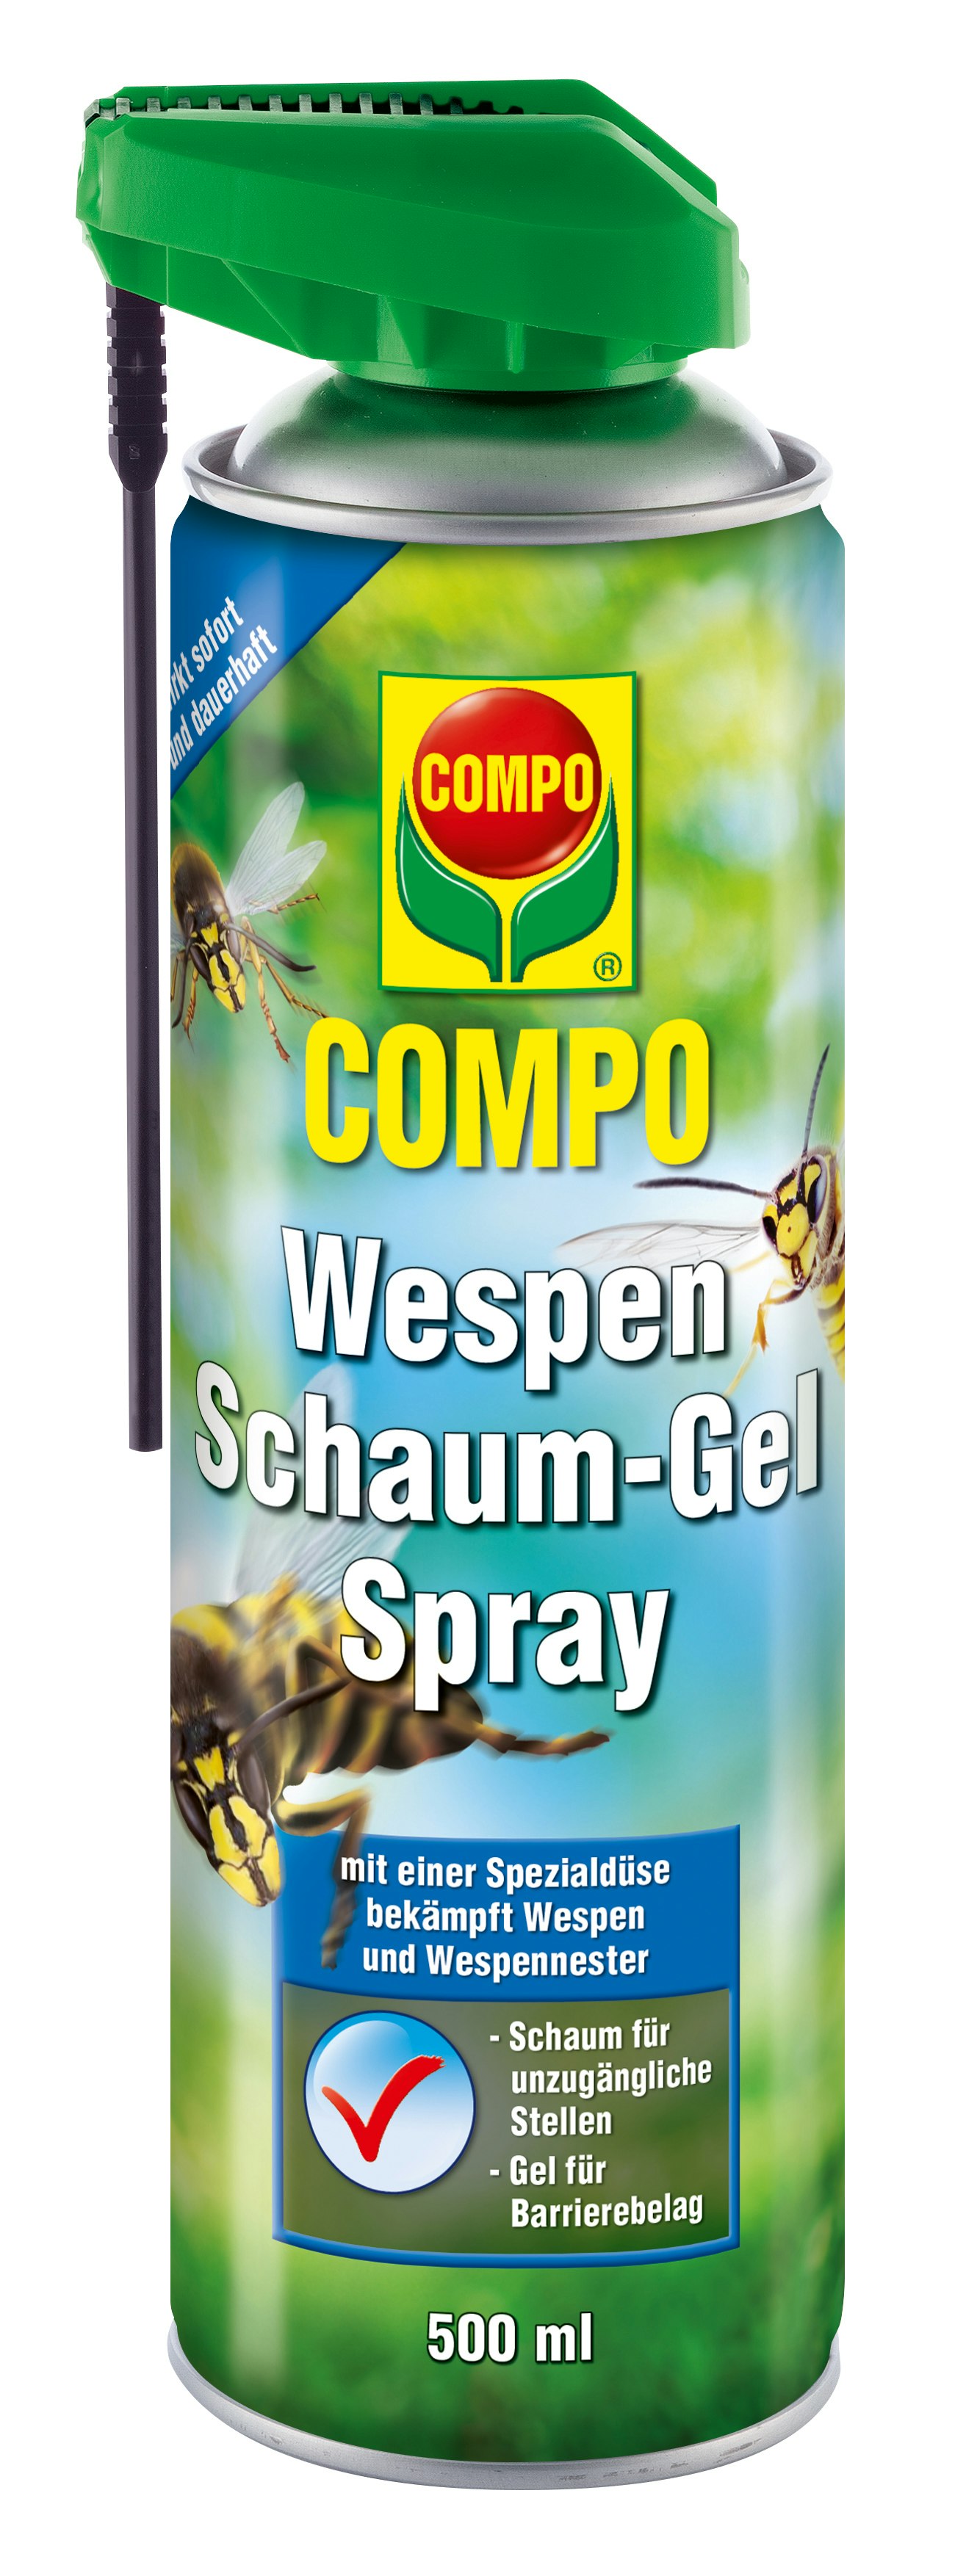 COMPO Wespen Schaum-Gel Spray (500 ml)